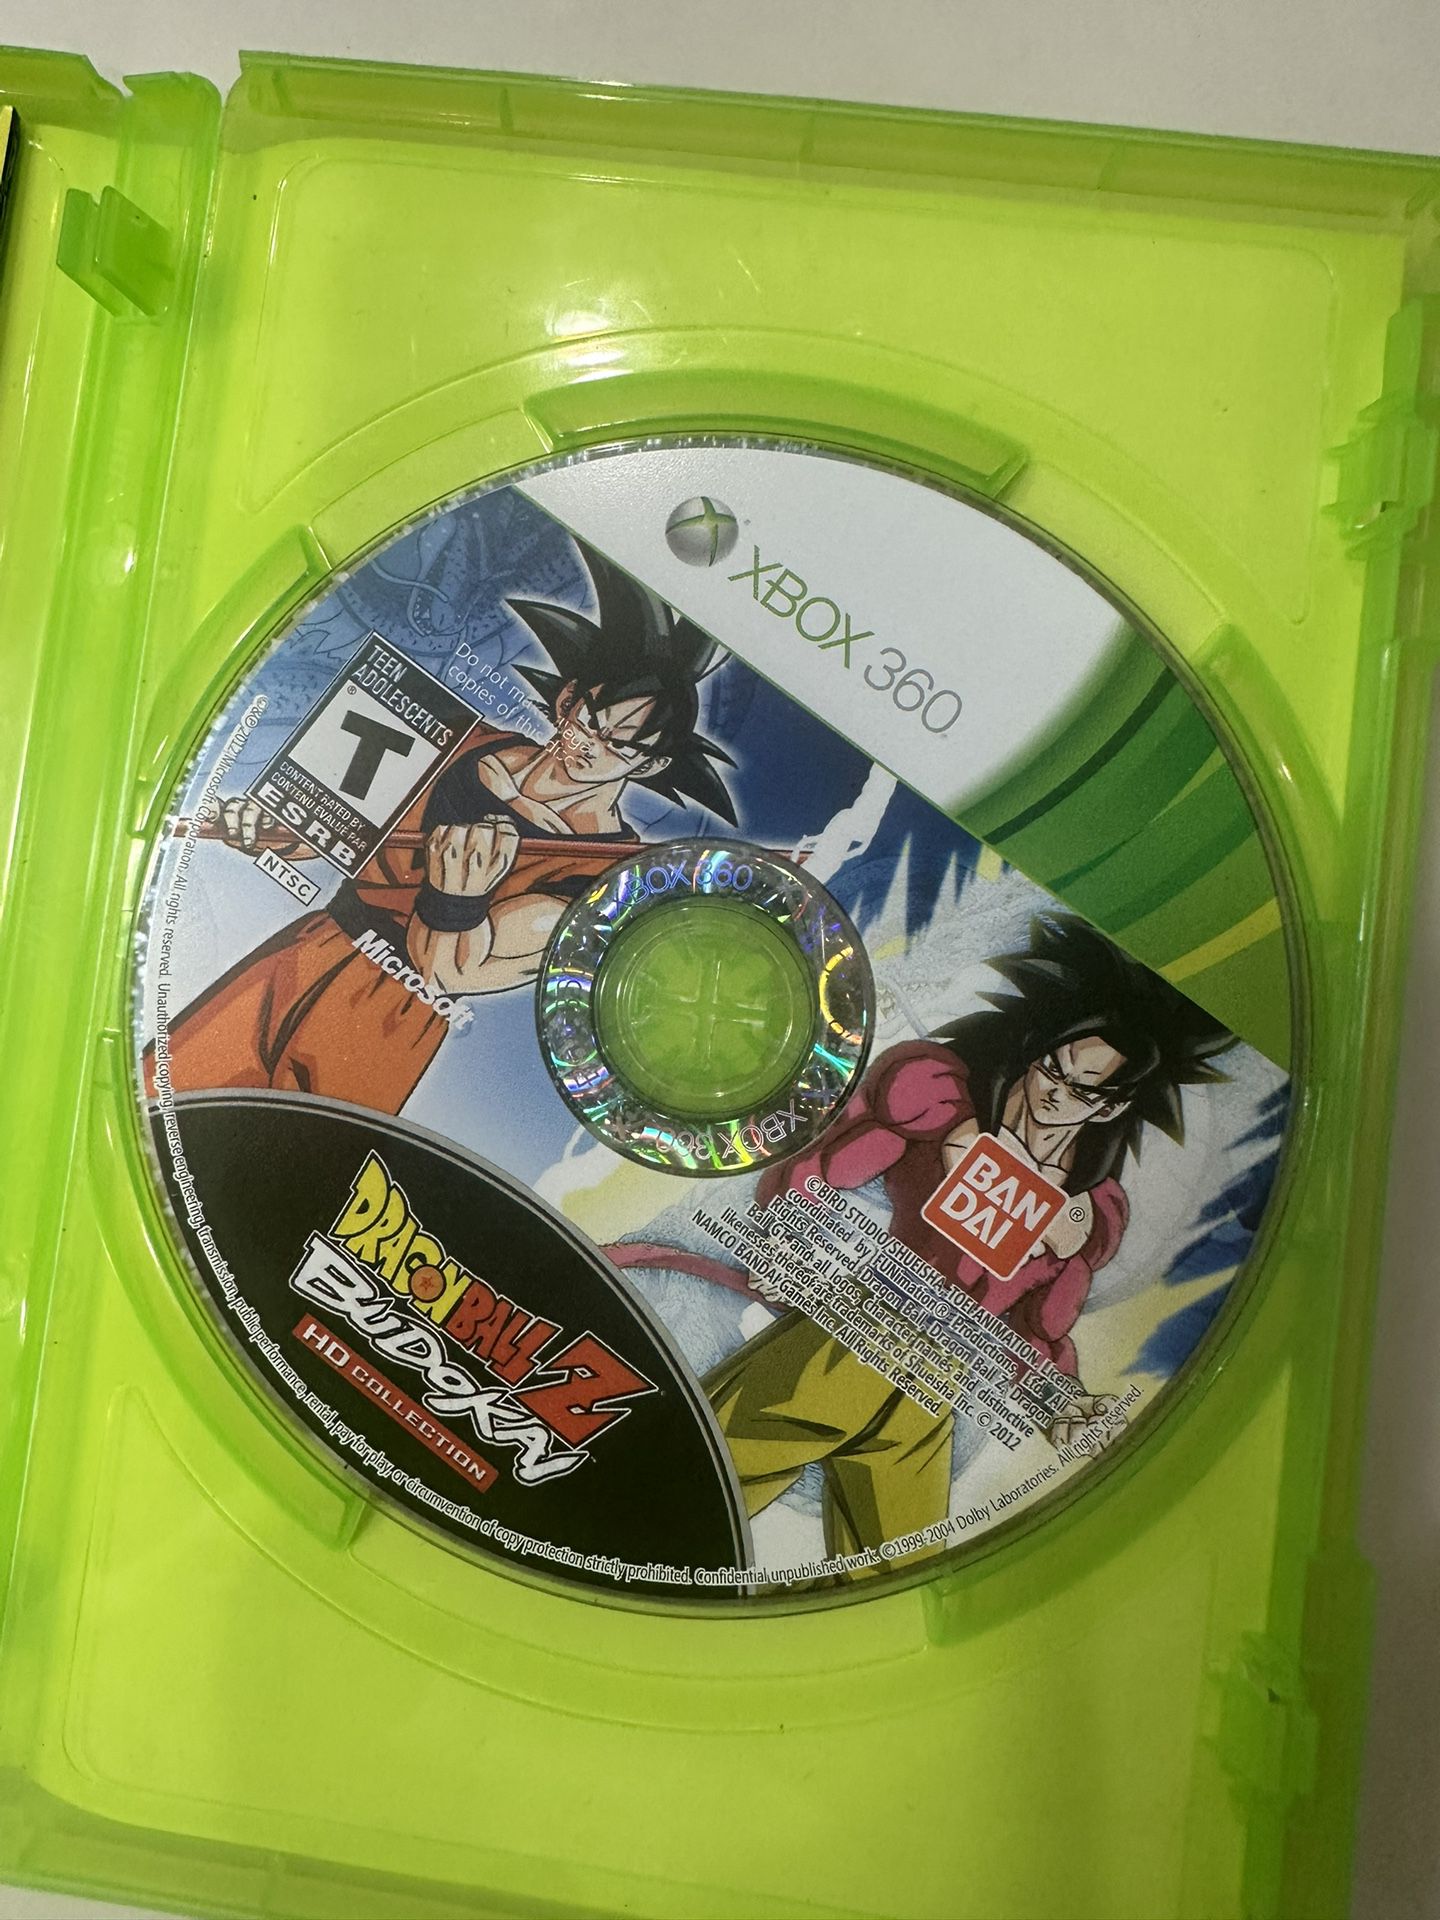 Rent Dragon Ball Z: Kakarot on Xbox One